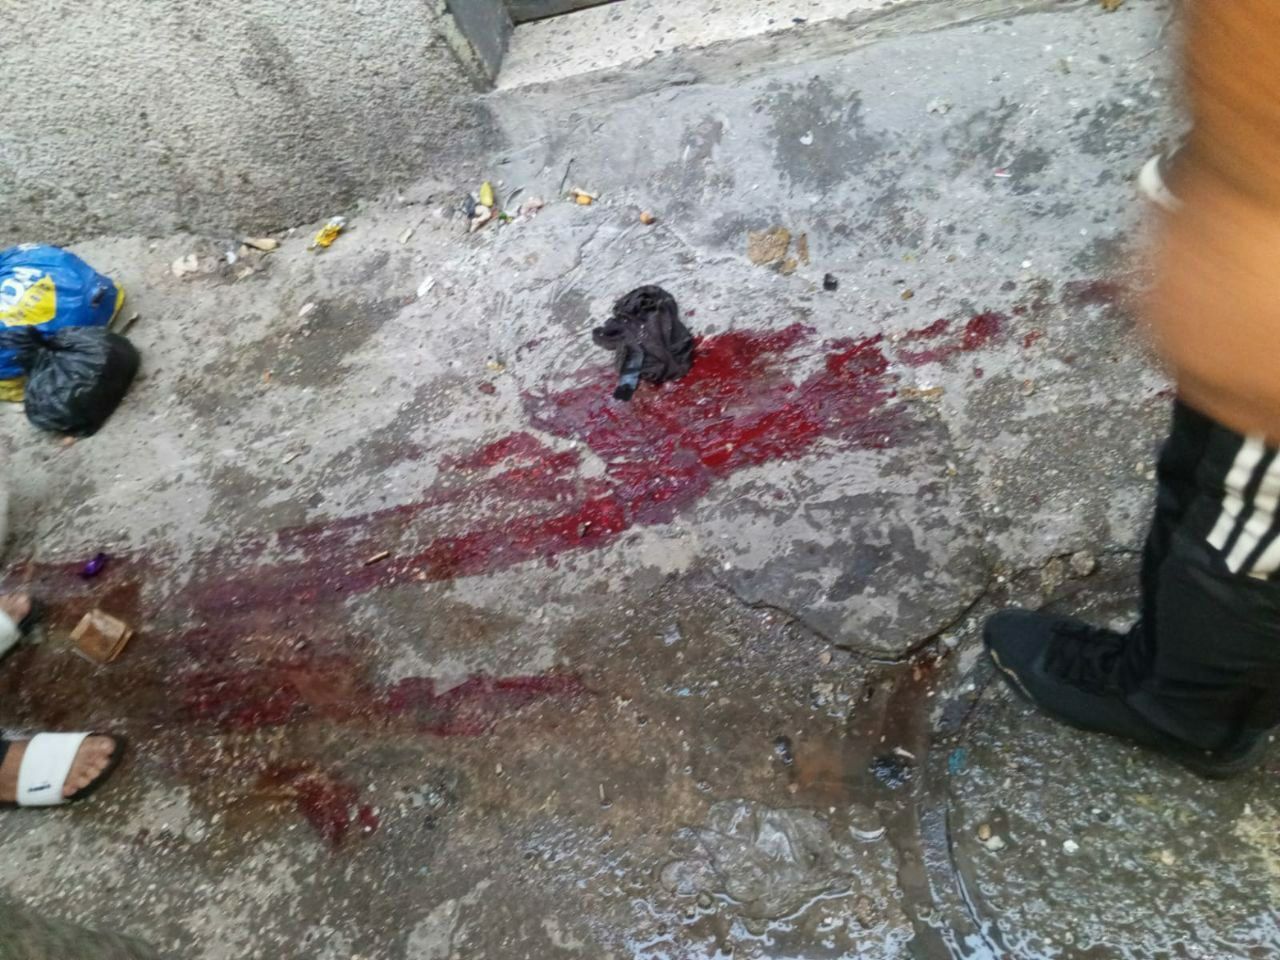 دماء جنود الاحتلال المصابين خلال الاشتباكات التي اندلعت في مخيم طولكرم